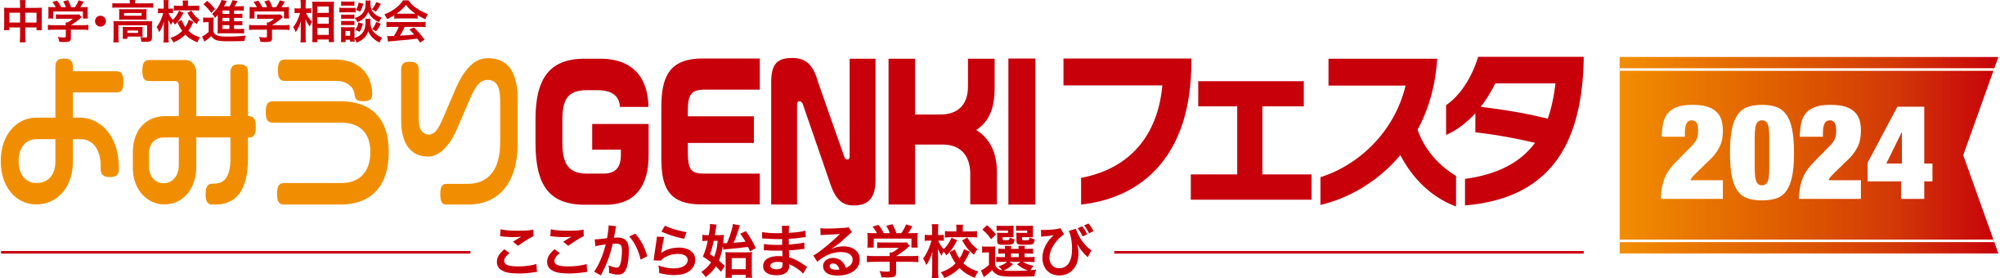 yomiuri_genki_2024_logo